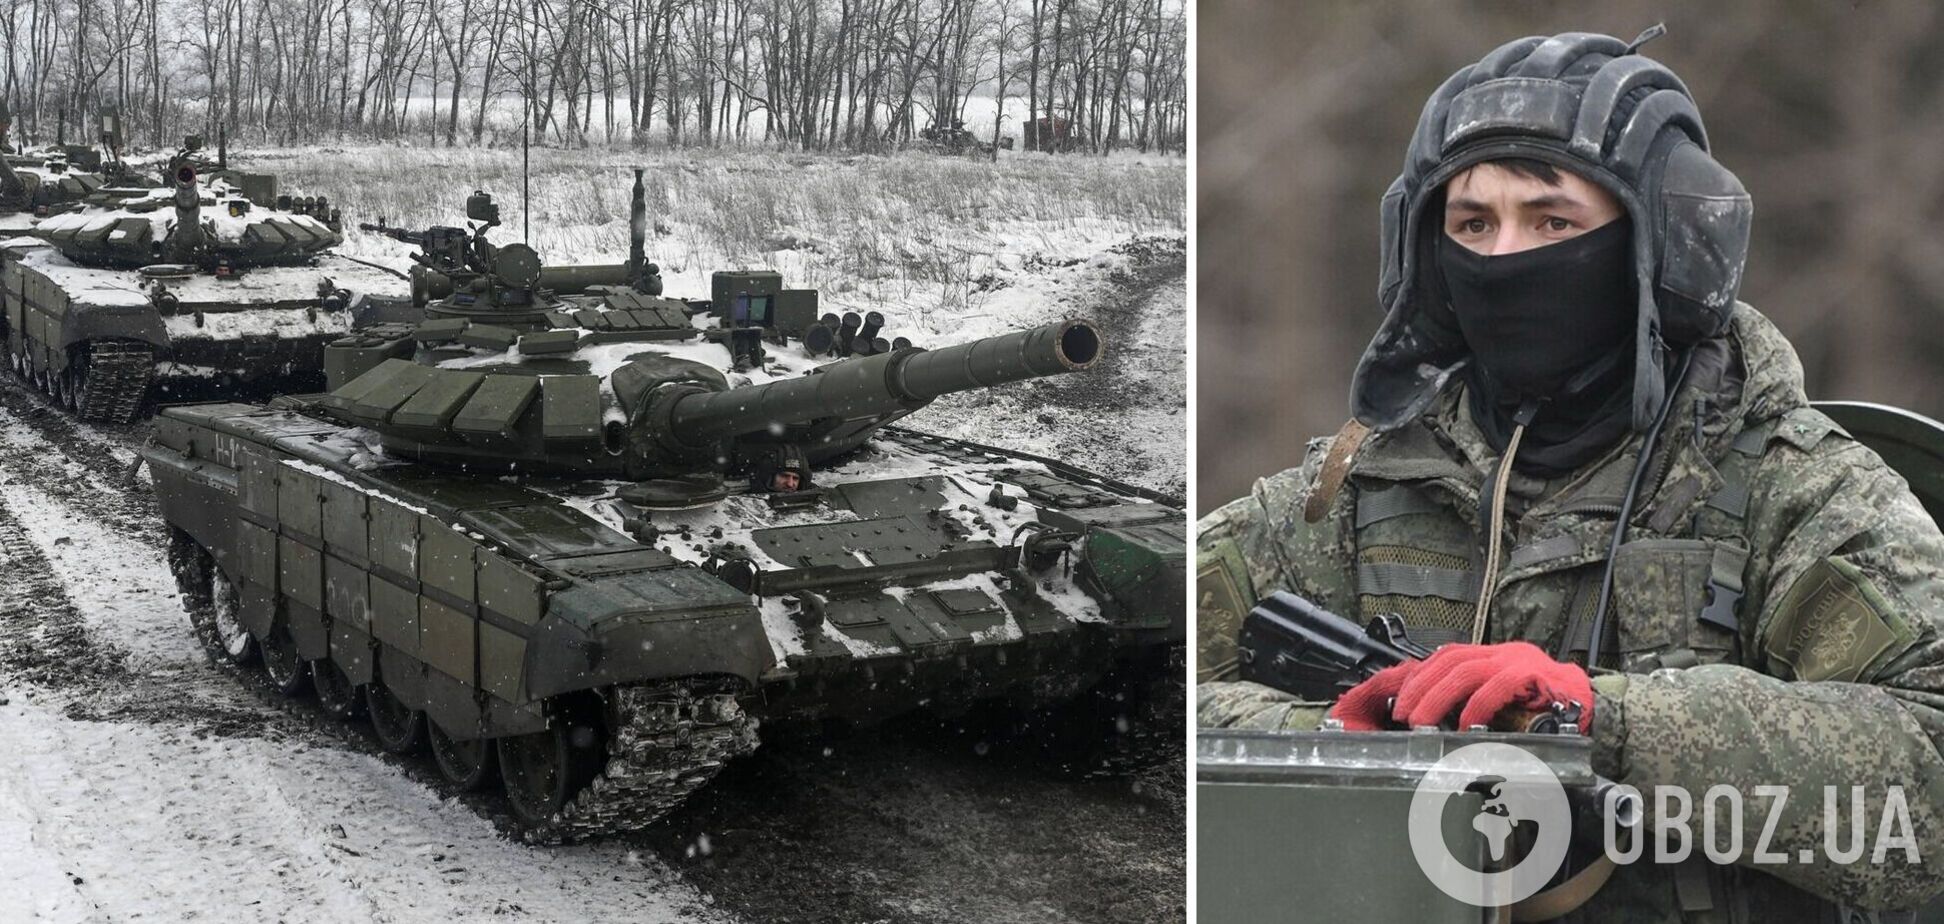 Оккупант под Киевом переехал танком своего командира, обвинив его в потере 50% личного состава, – журналист